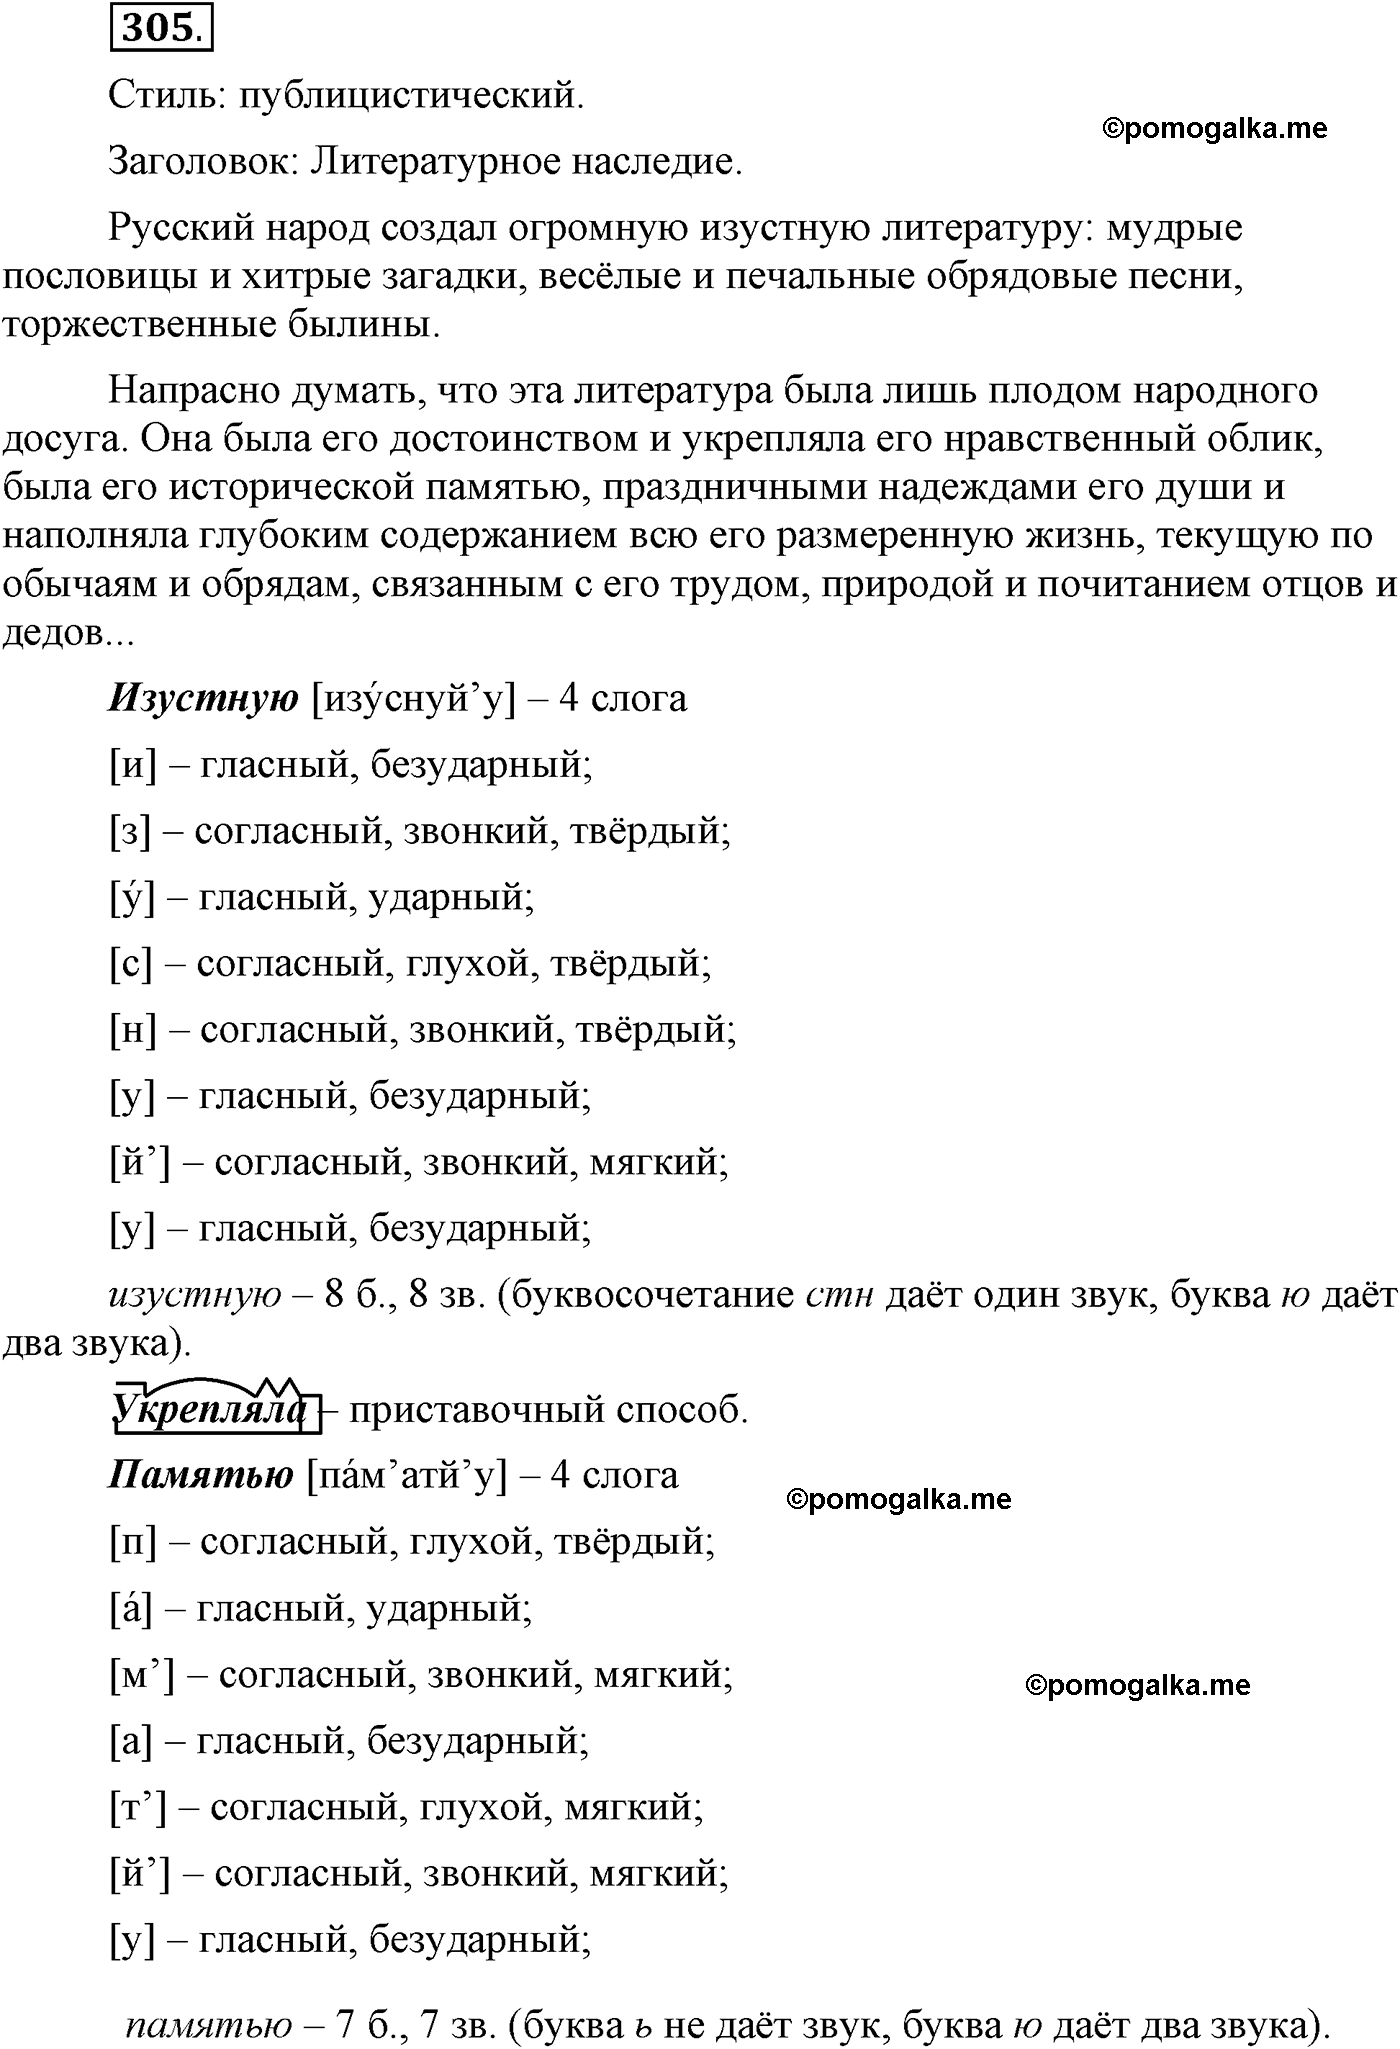 упражнение №305 русский язык 9 класс Пичугов